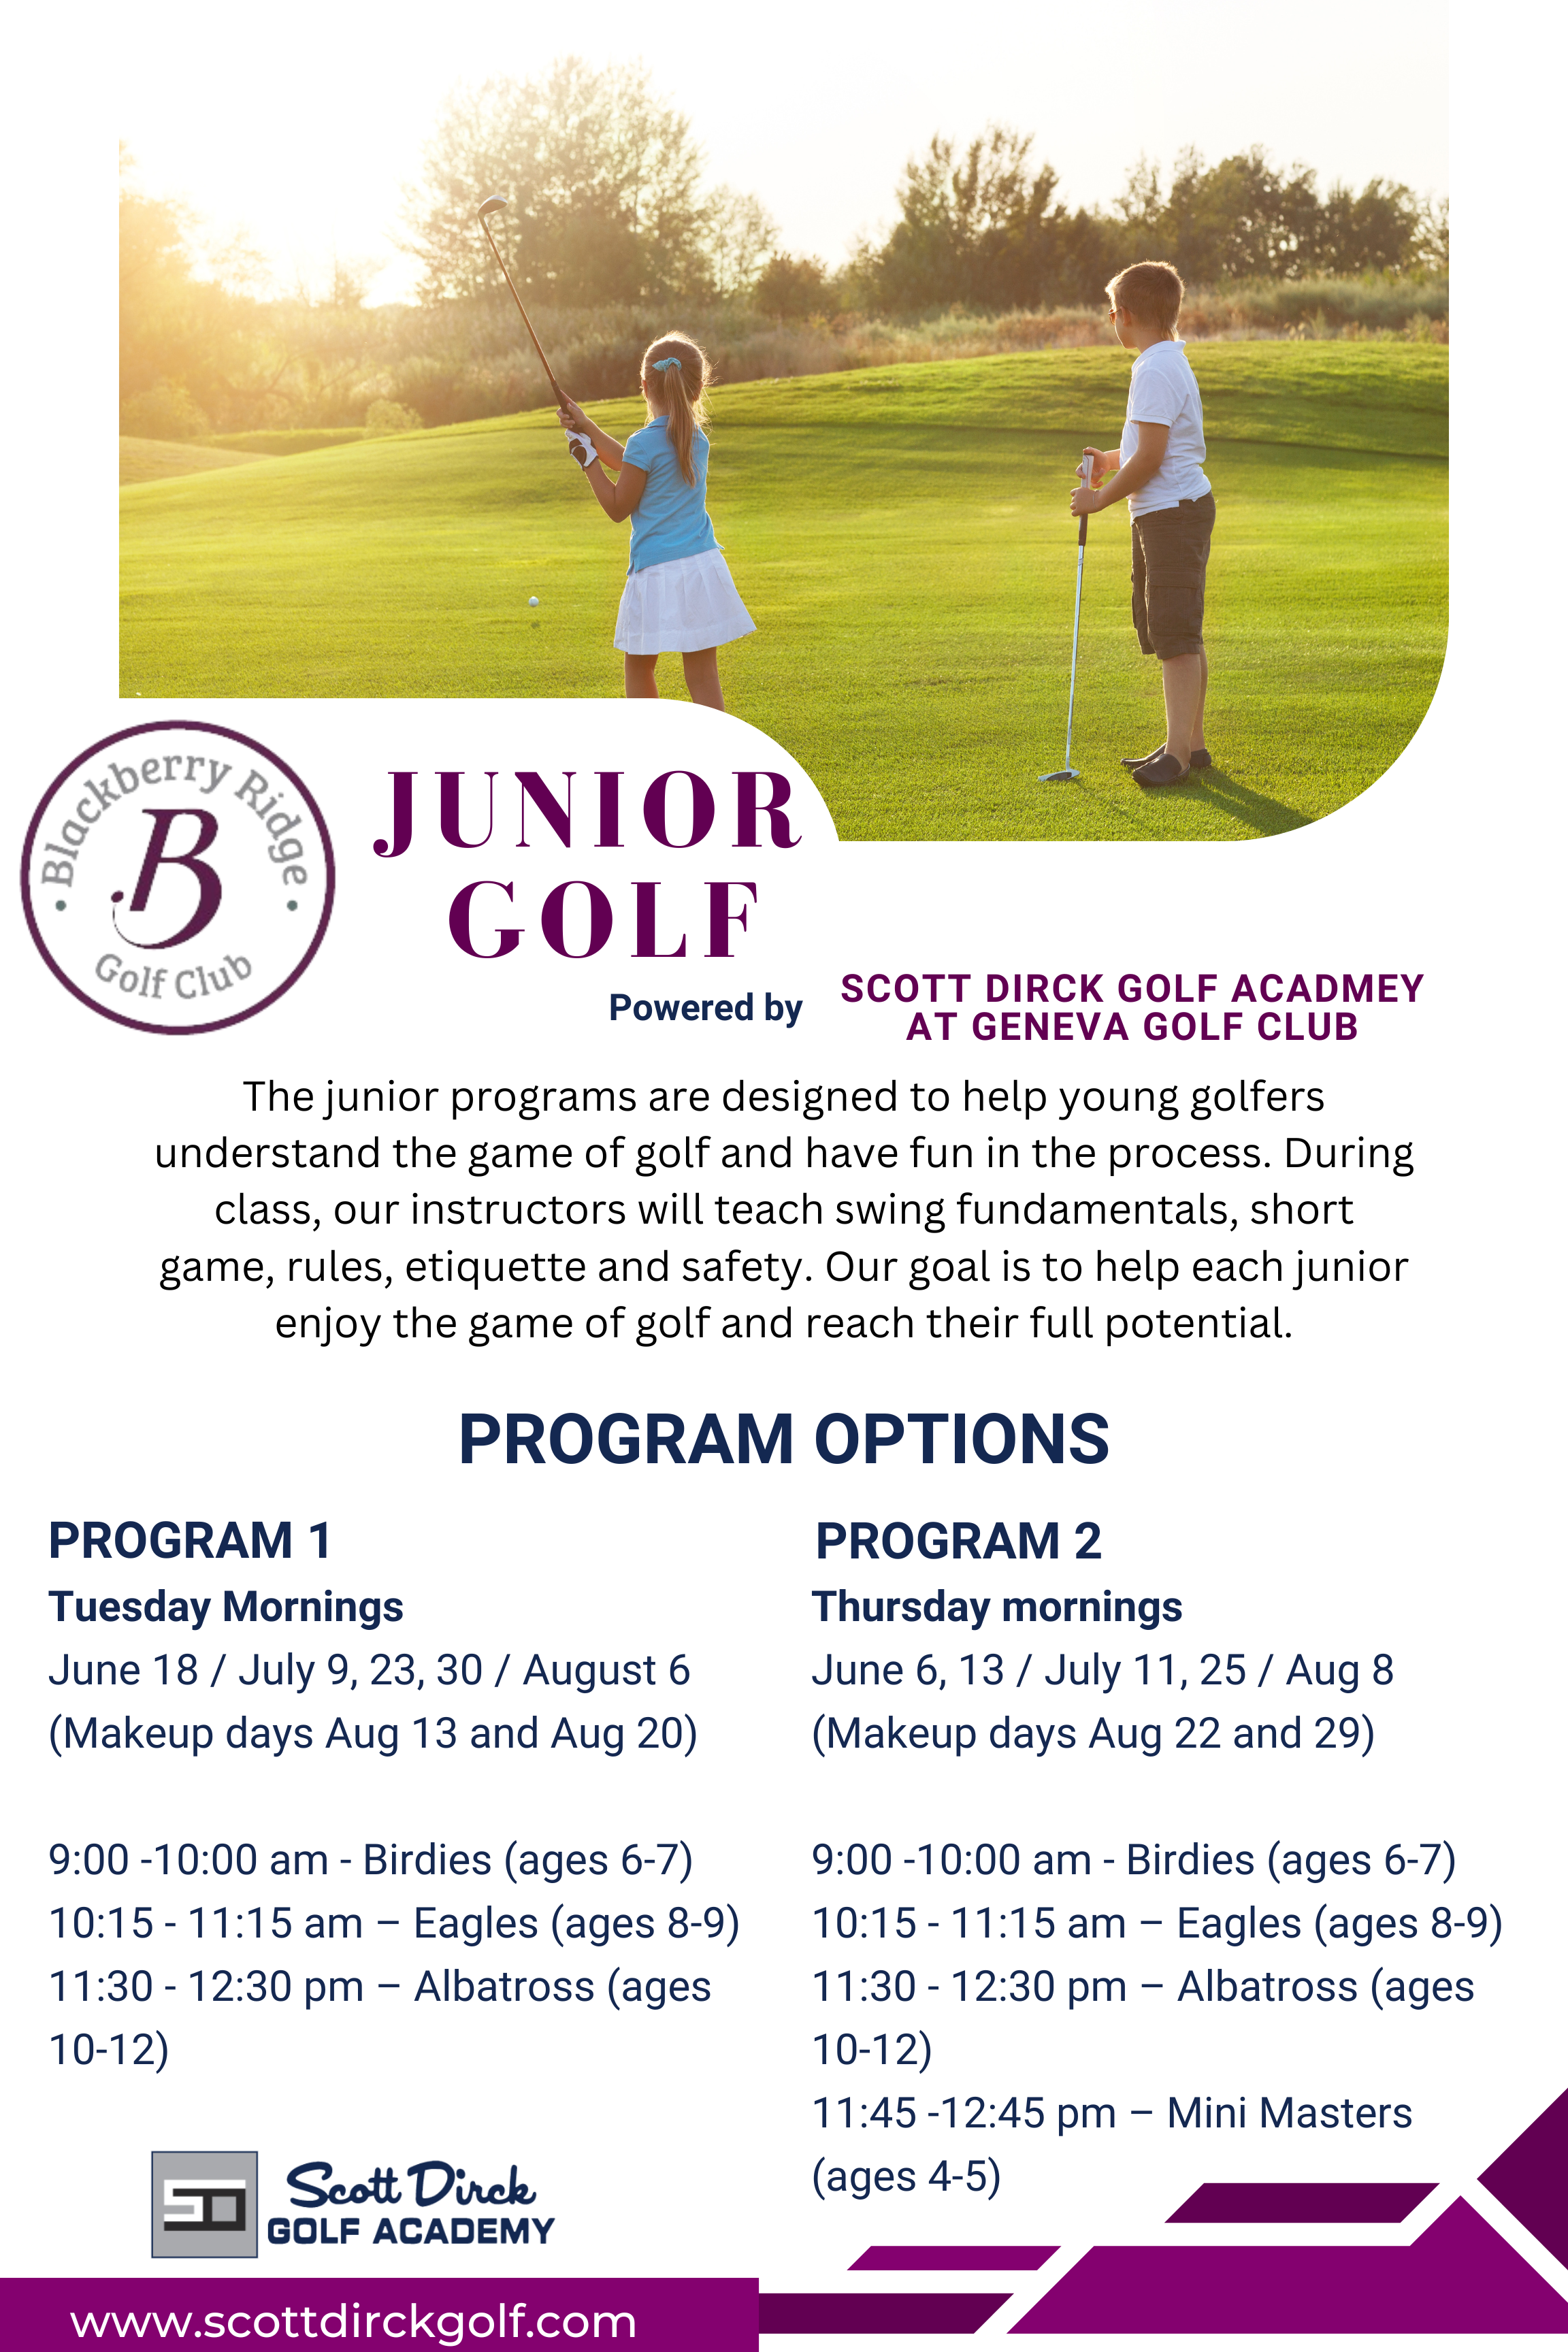 Junior Golf Summer 2024 Programs